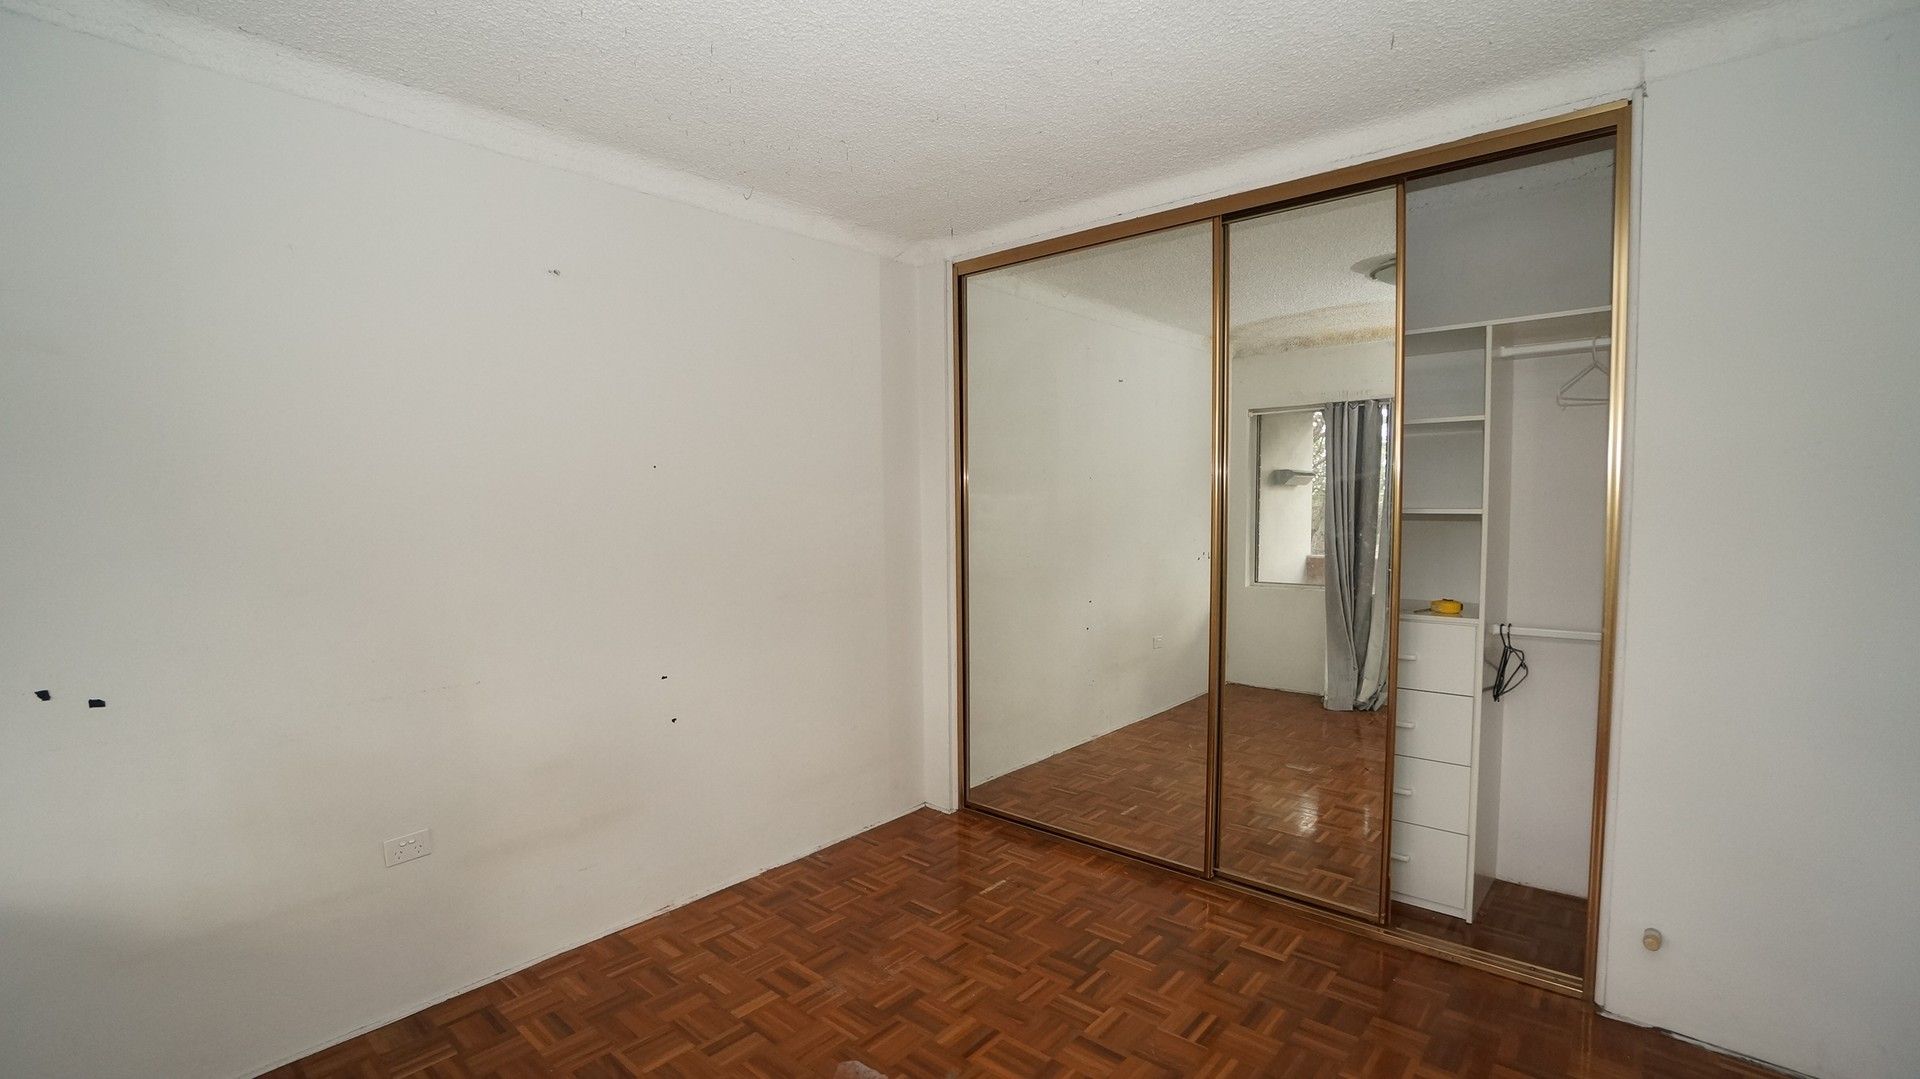 2 bedrooms Apartment / Unit / Flat in 6/72 Mcburney Road CABRAMATTA NSW, 2166